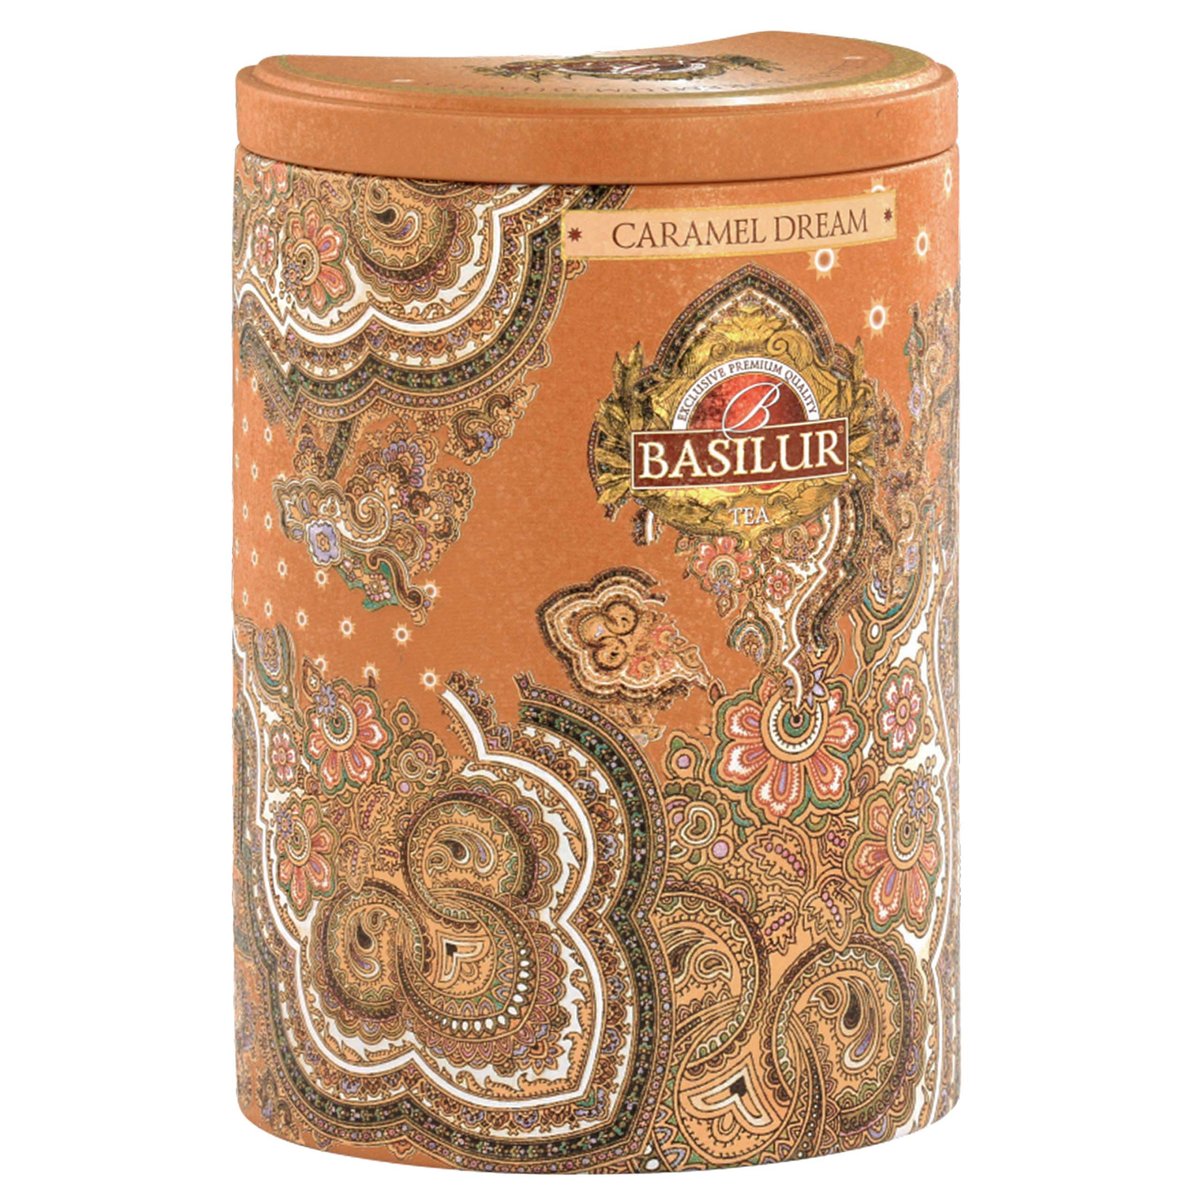 BASILUR Caramel Dream- Liściasta czarna herbata cejlońska z naturalnym aromatem karmelu w ozdobnej puszce, 100 g x1